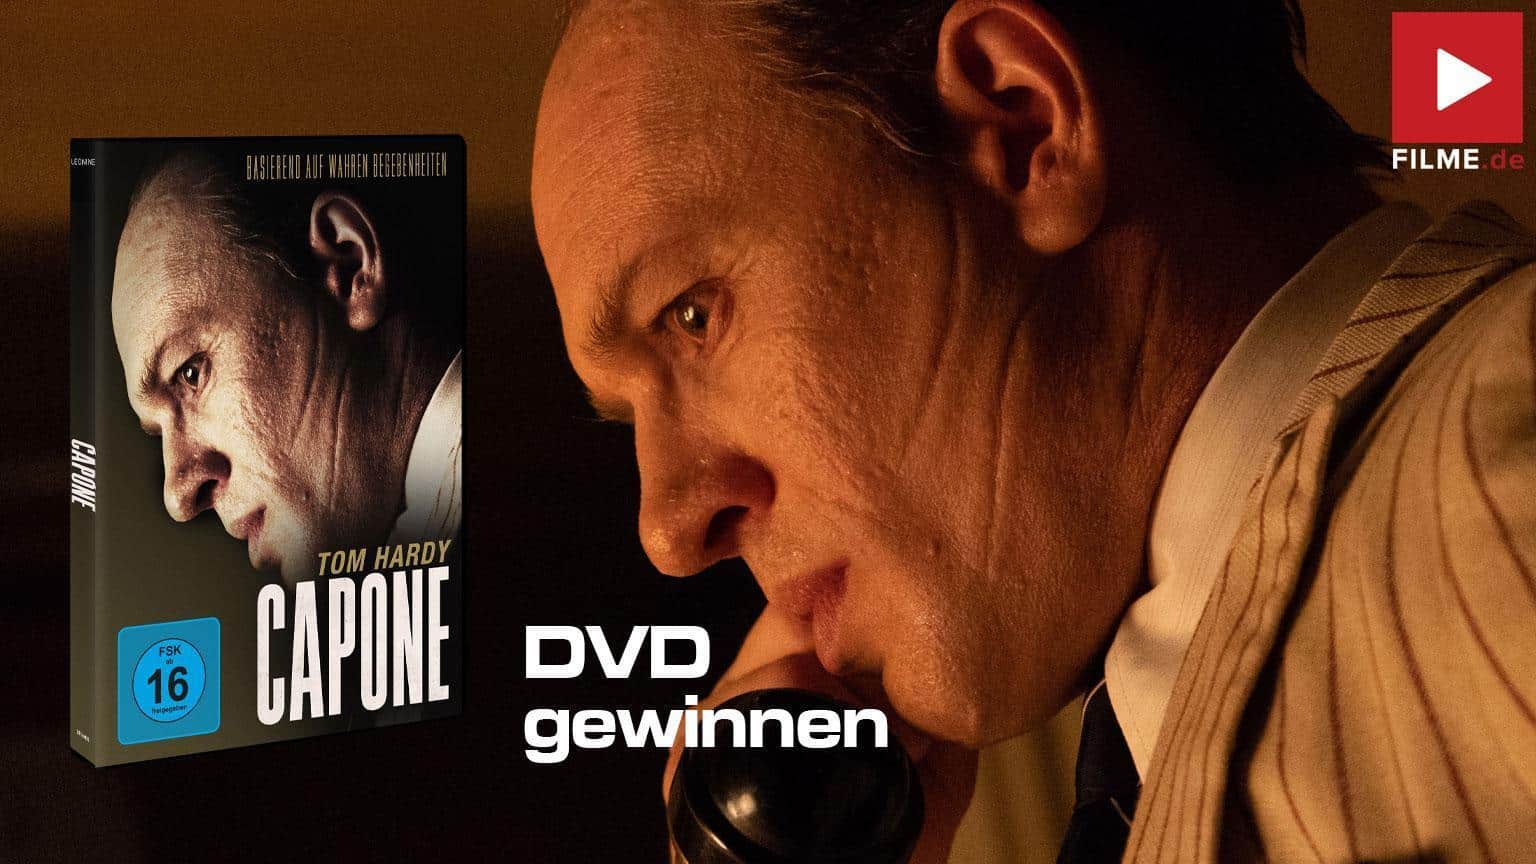 Capone Film 2021 DVD Blu-ray Digital Gewinnspiel gewinnen Artikelbild